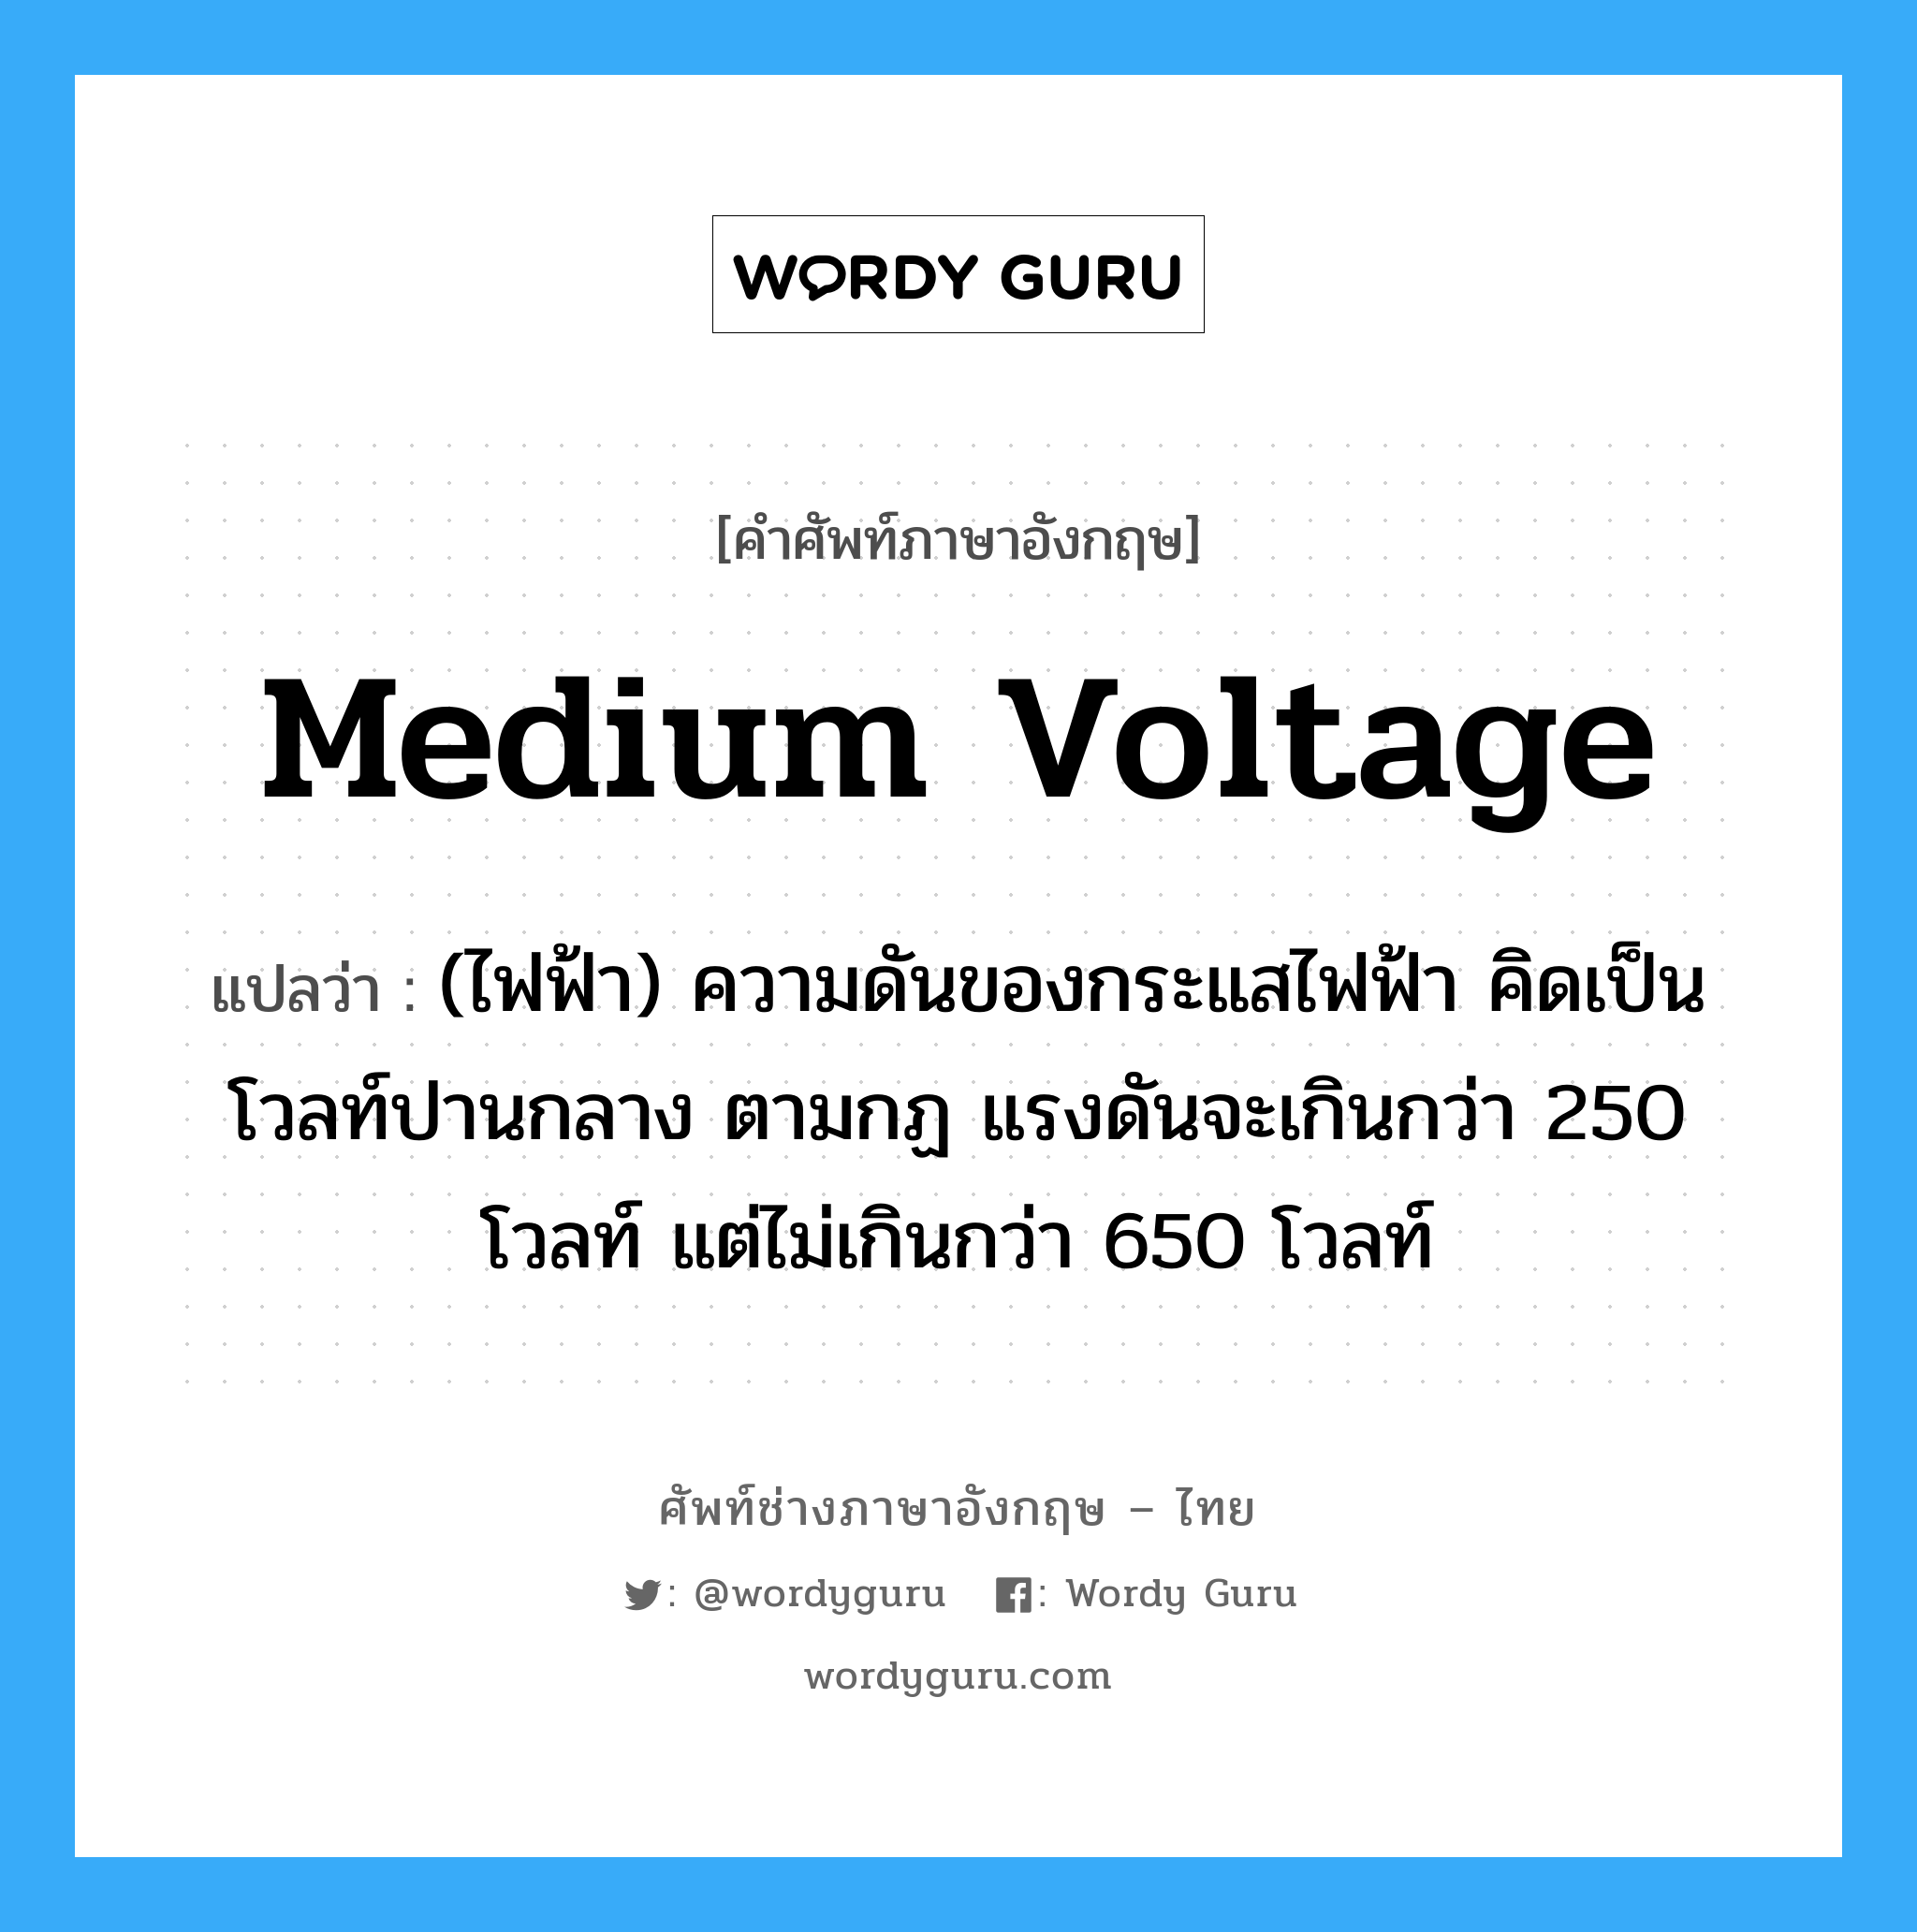 medium voltage แปลว่า?, คำศัพท์ช่างภาษาอังกฤษ - ไทย medium voltage คำศัพท์ภาษาอังกฤษ medium voltage แปลว่า (ไฟฟ้า) ความดันของกระแสไฟฟ้า คิดเป็นโวลท์ปานกลาง ตามกฏ แรงดันจะเกินกว่า 250 โวลท์ แต่ไม่เกินกว่า 650 โวลท์